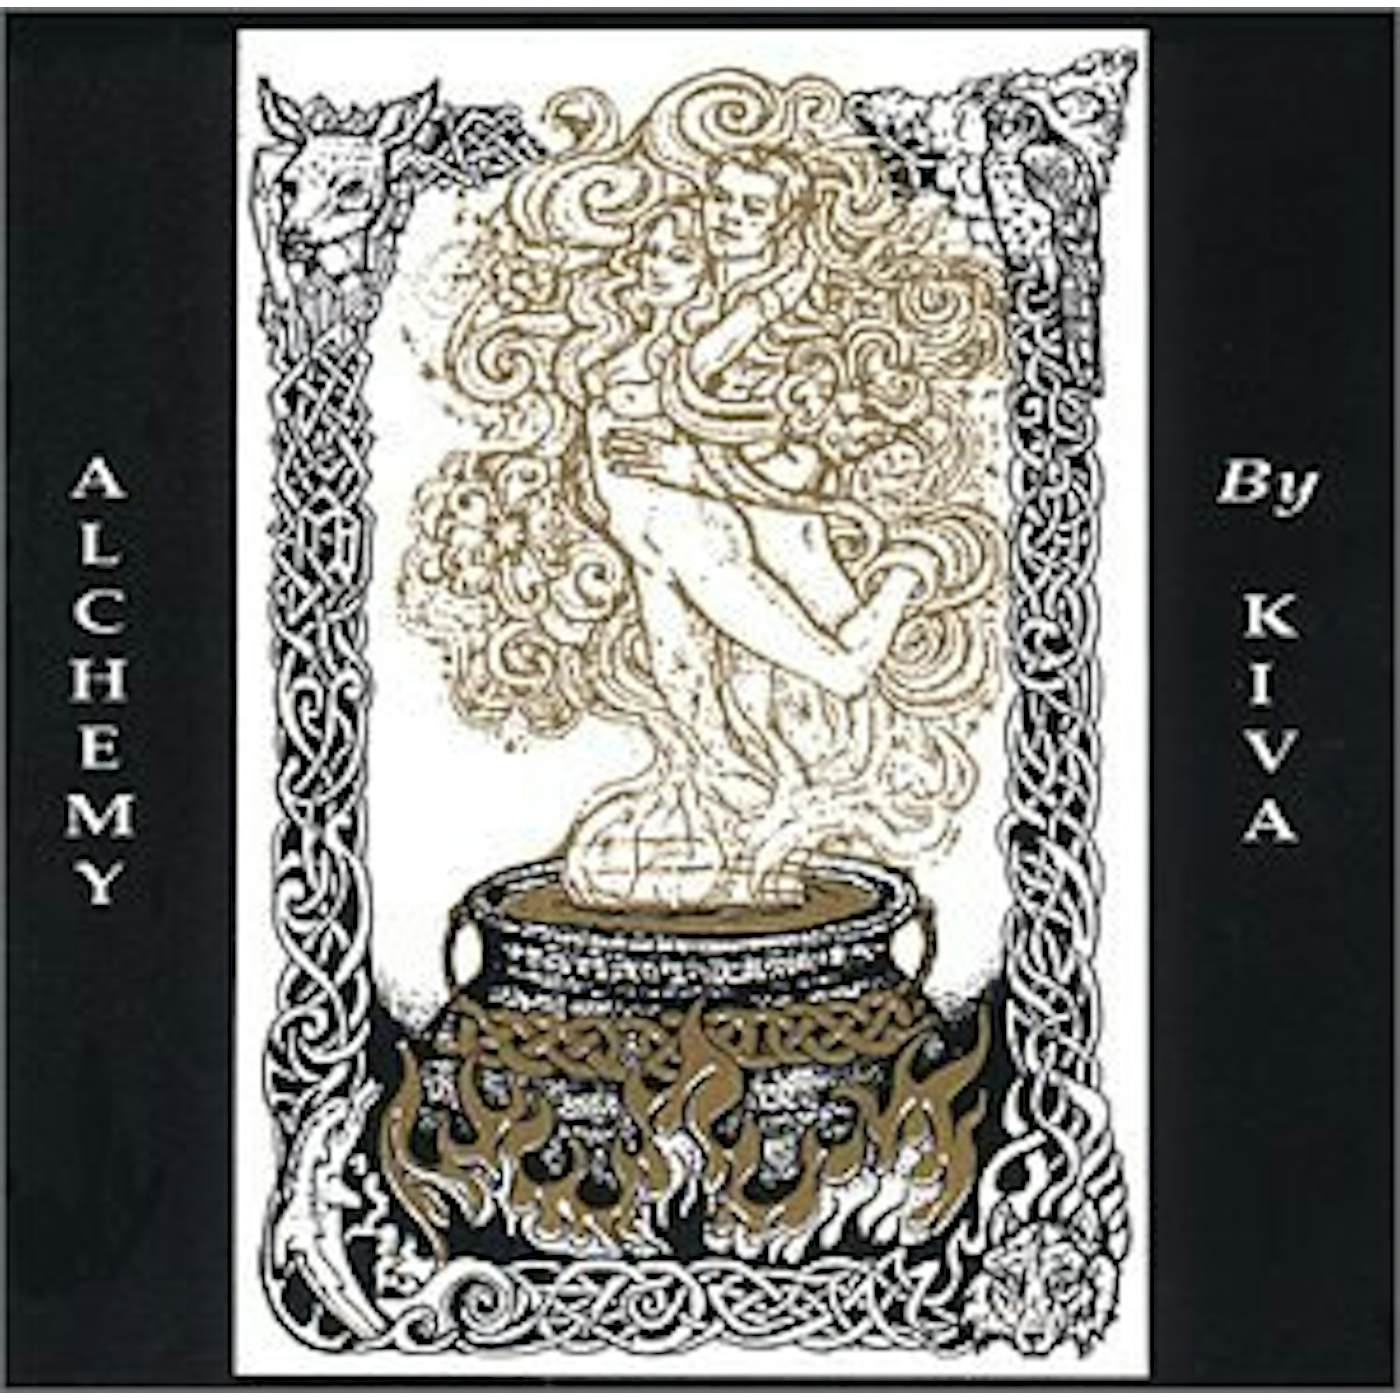 KIVA ALCHEMY CD